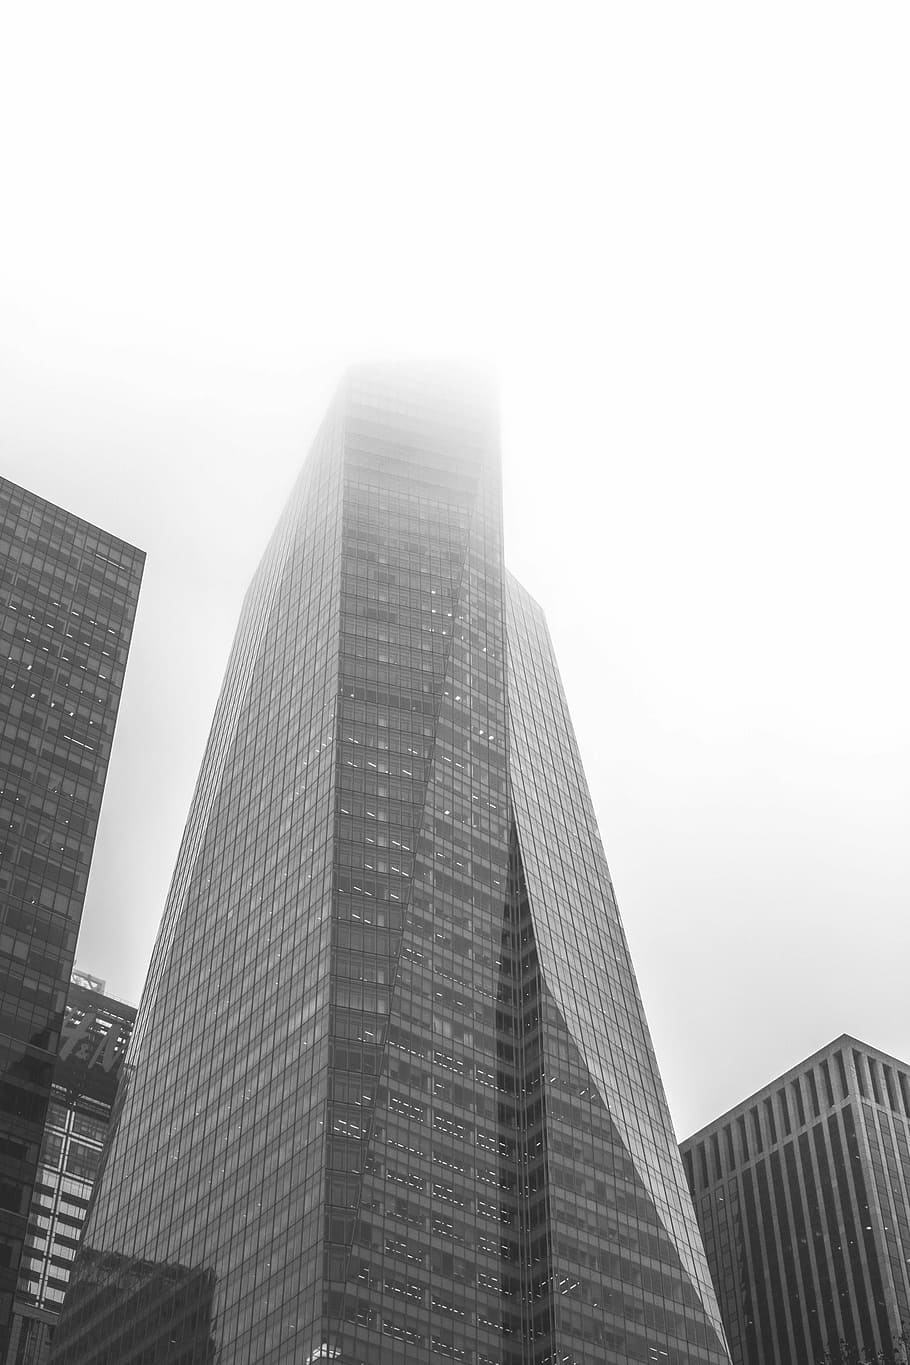 fotografia em baixo ângulo em escala de cinza, arranha-céu, construção, escala de cinza, fotografia, concreto, Nova York, cidade de Nova York, edifícios, torres